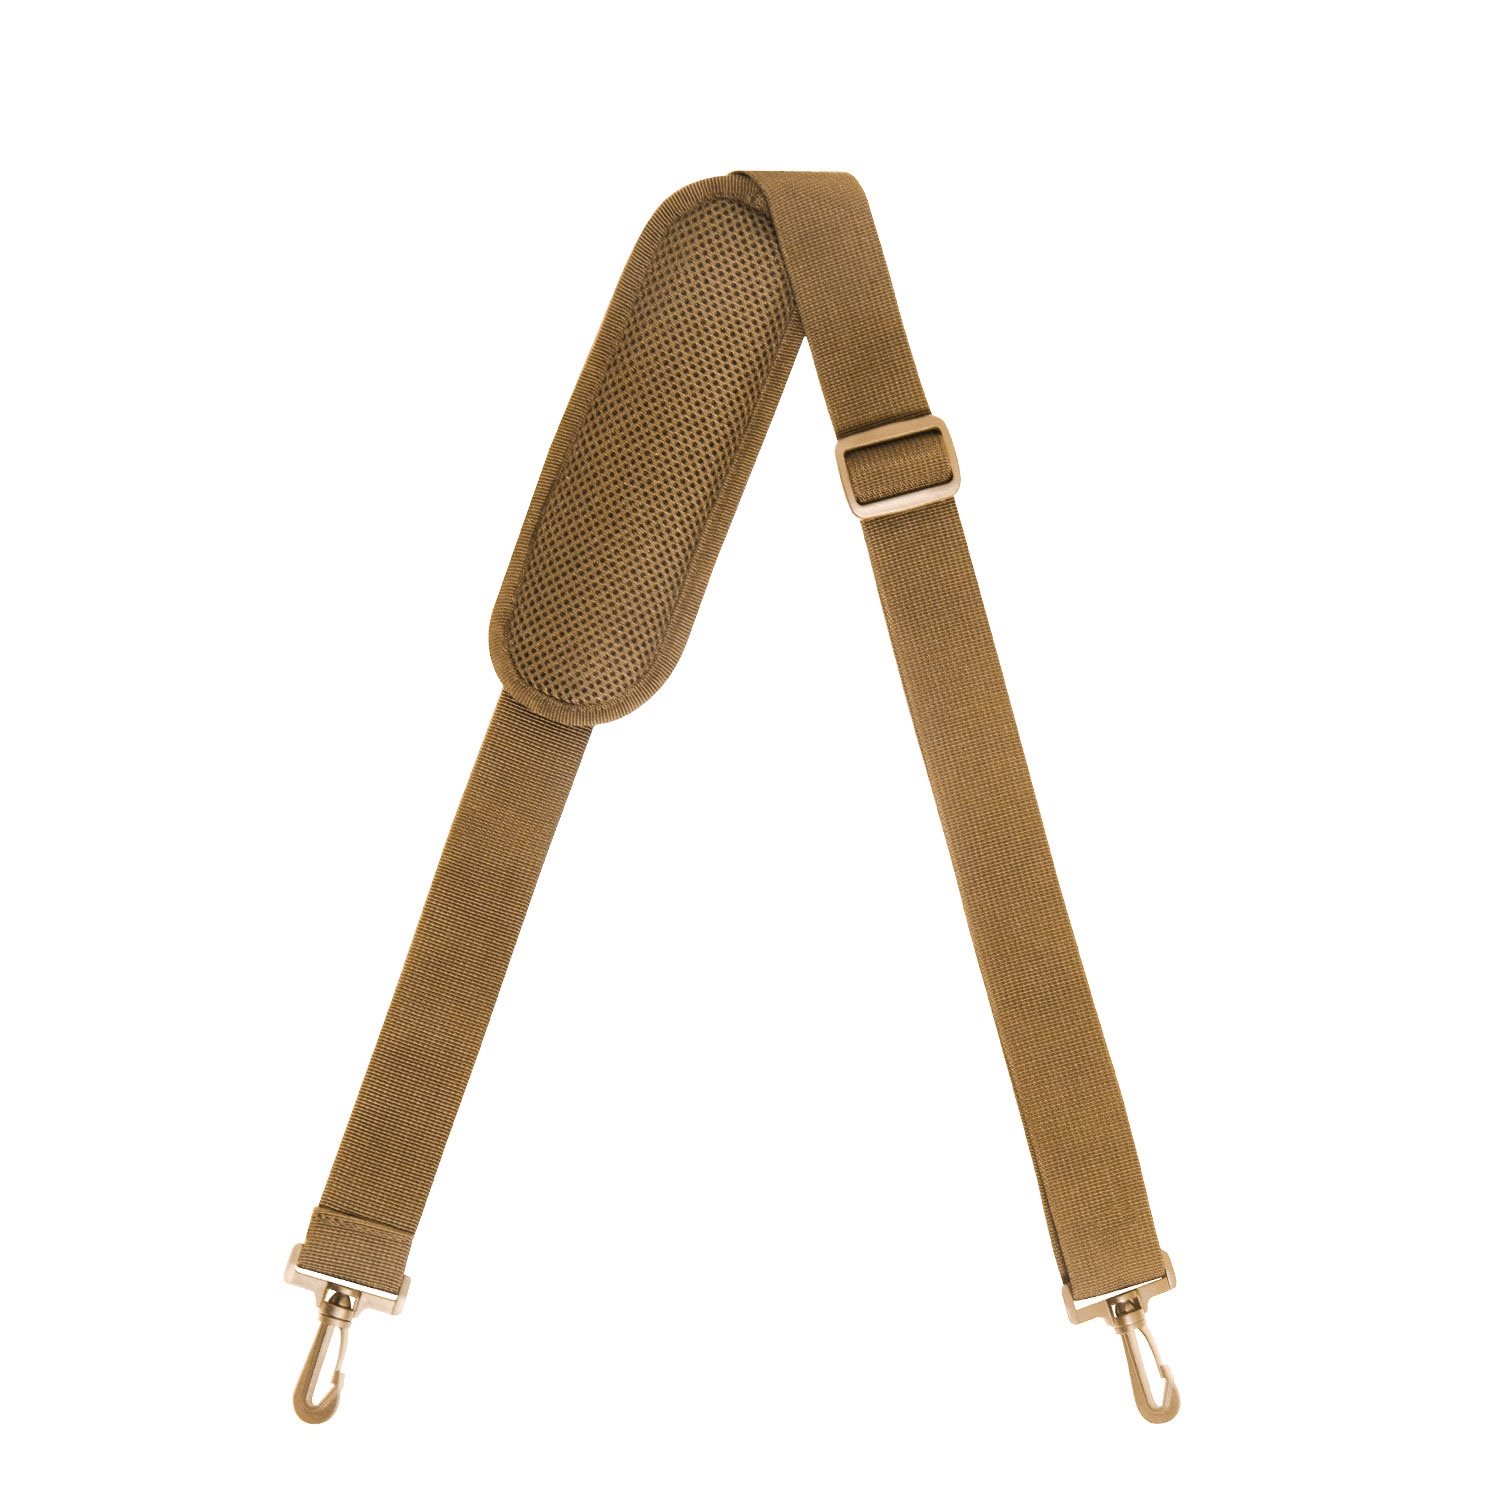 Detachable Shoulder Strap Pad Bag Shoulder Pad Rifle Sling Pad for